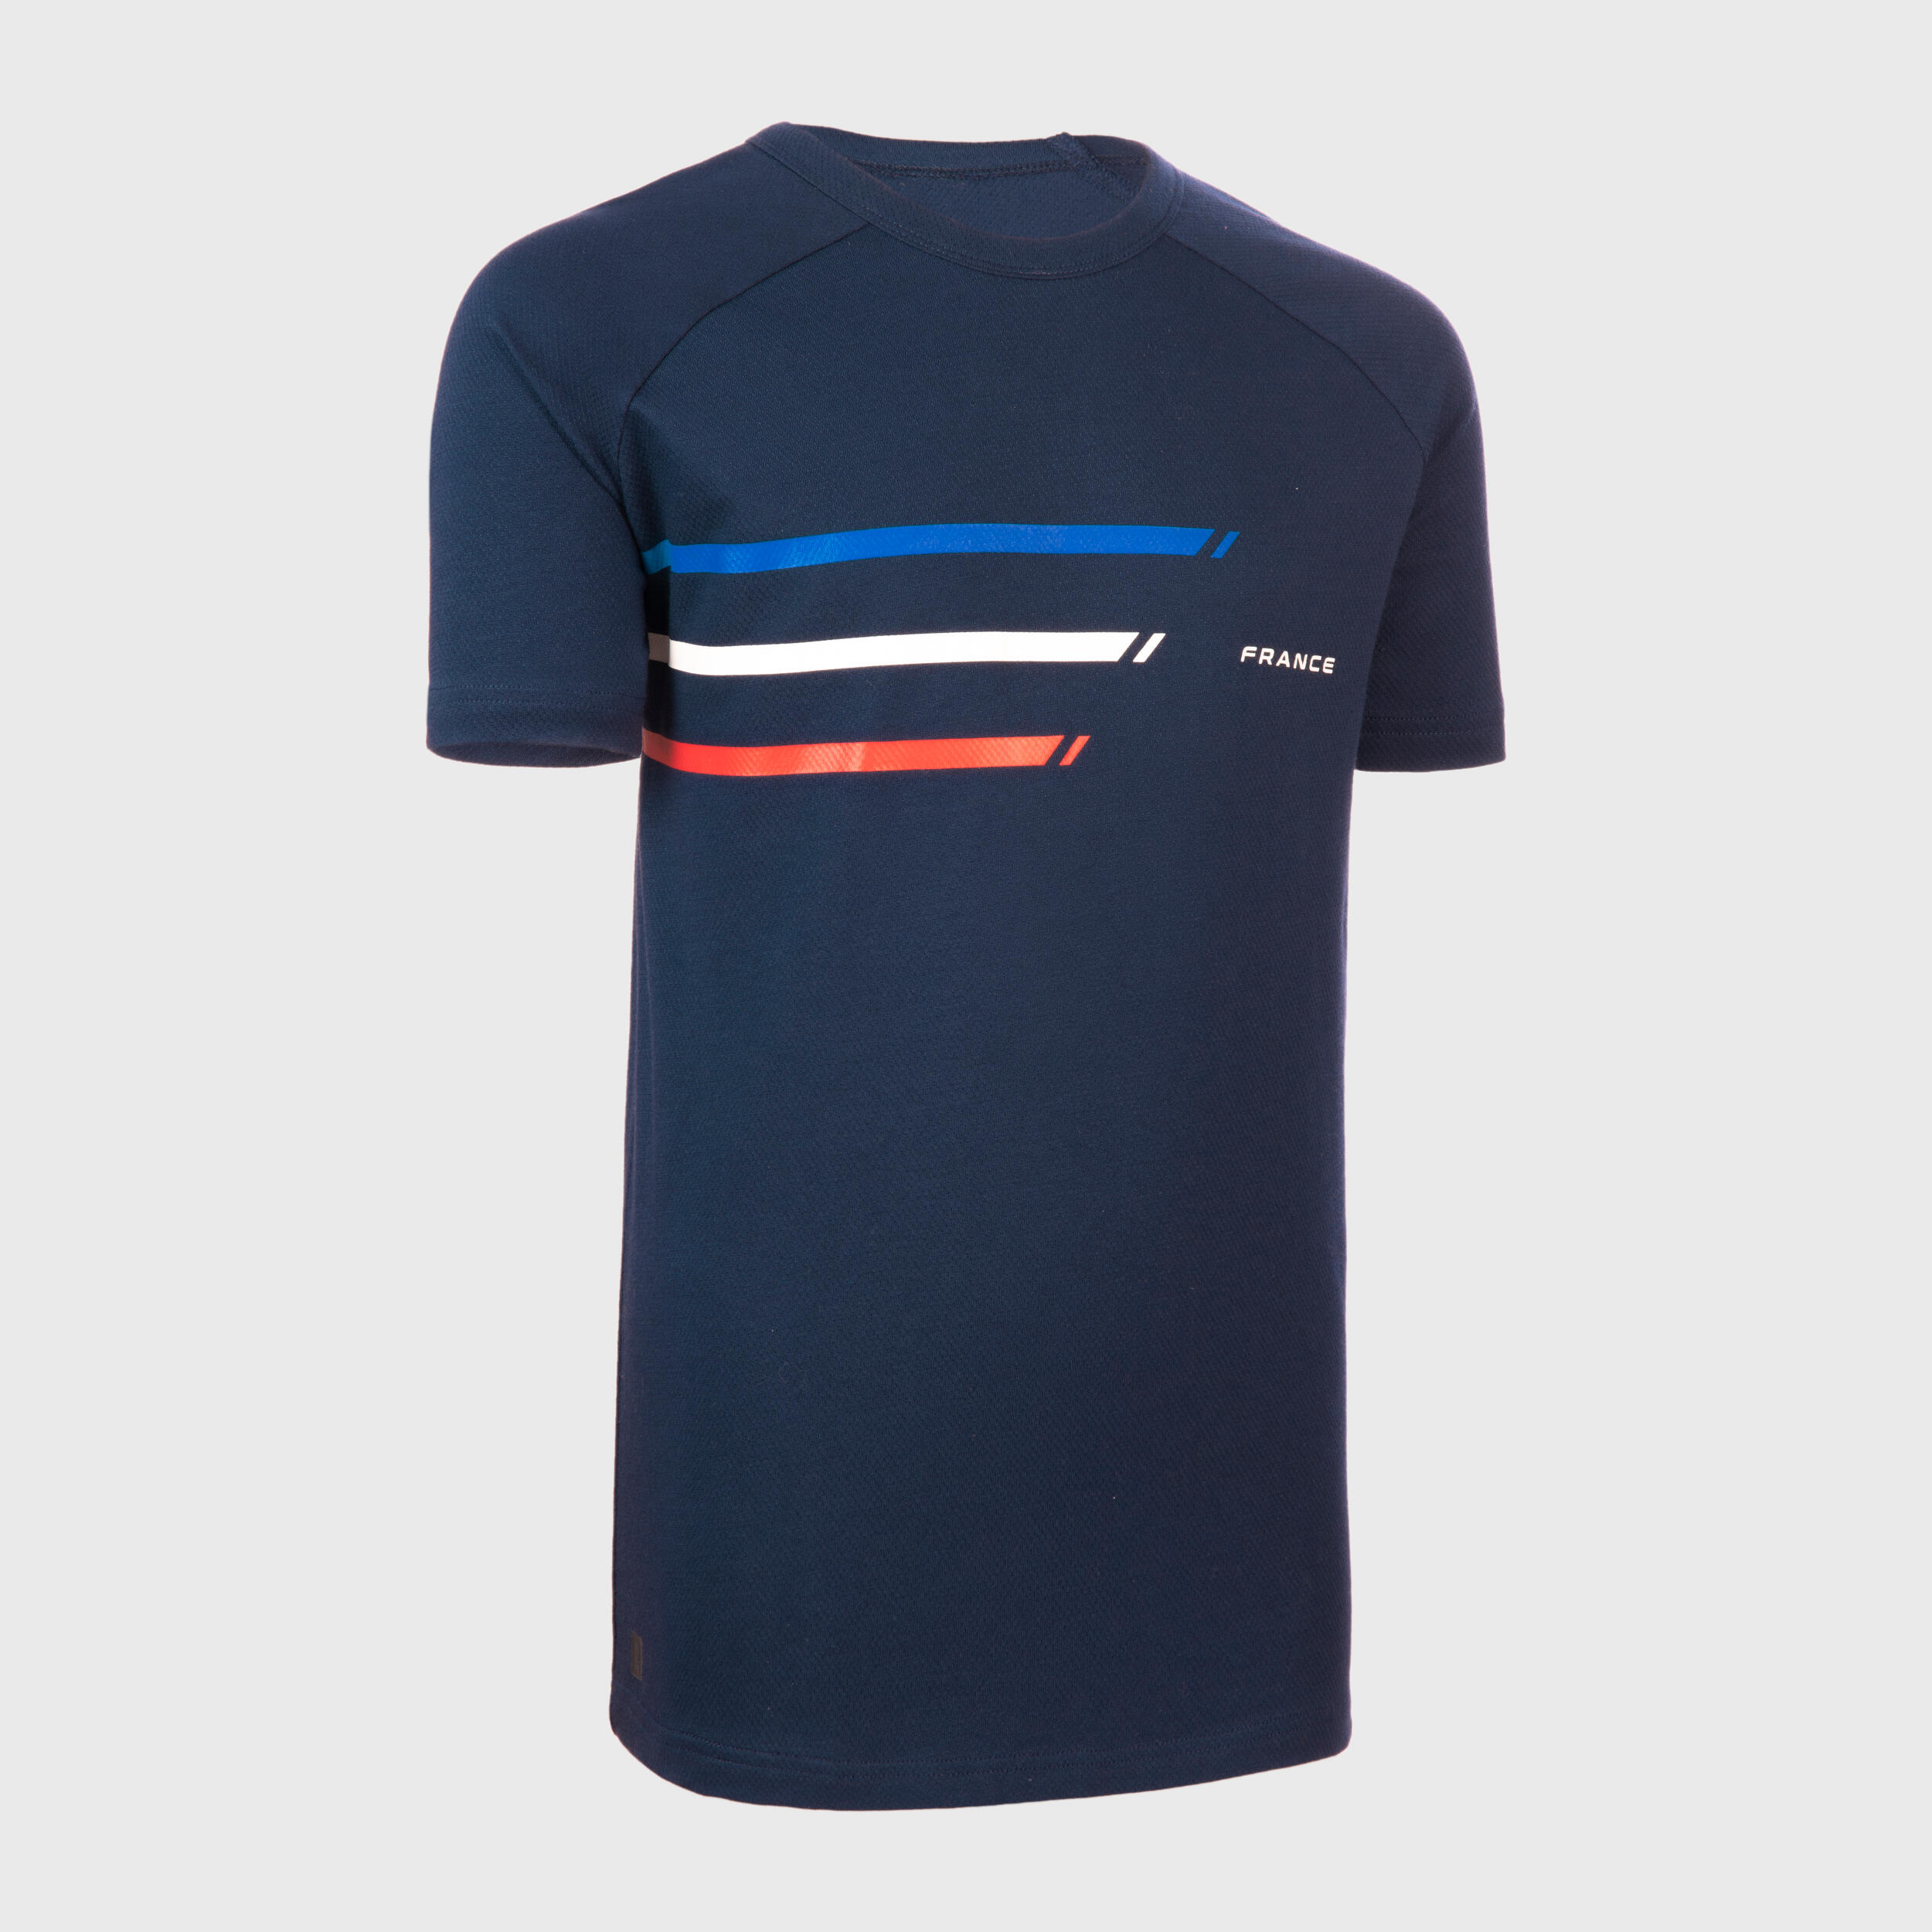 OFFLOAD Kids' Short-Sleeved T-Shirt R100 - France